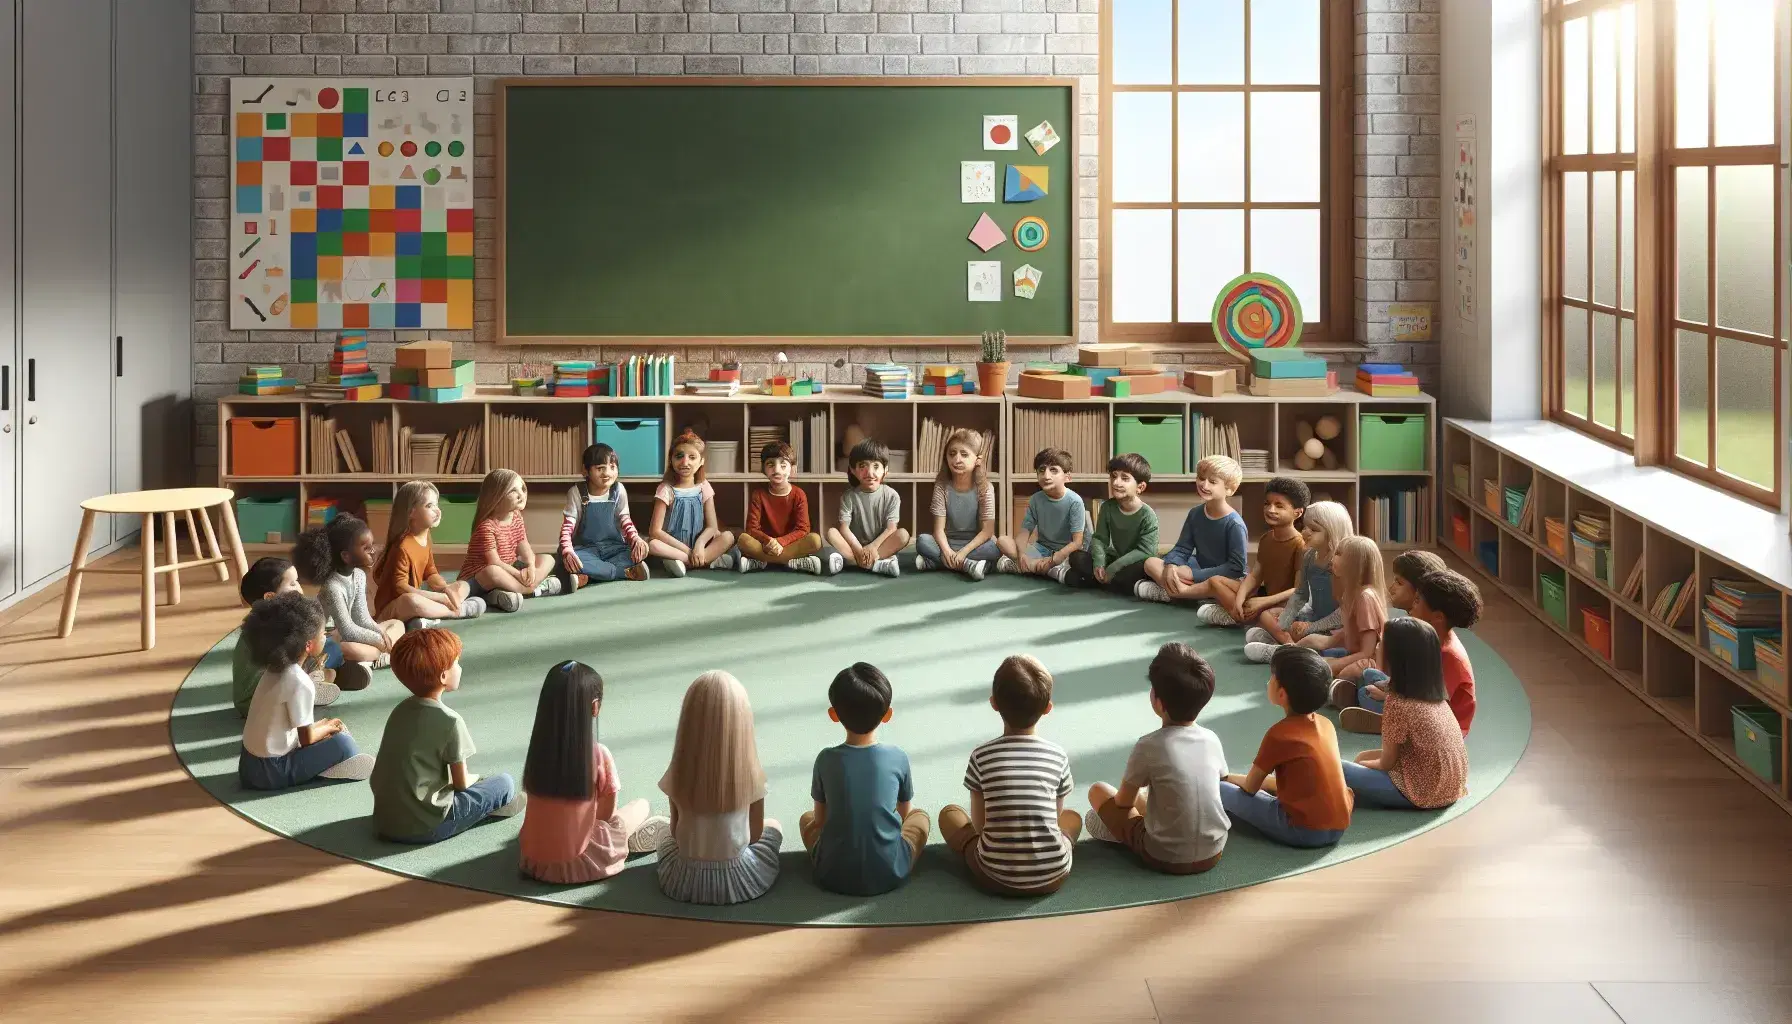 Niños de diversas etnias sentados en semicírculo en aula escolar, participando en actividad grupal con luz natural y estantería de libros coloridos.